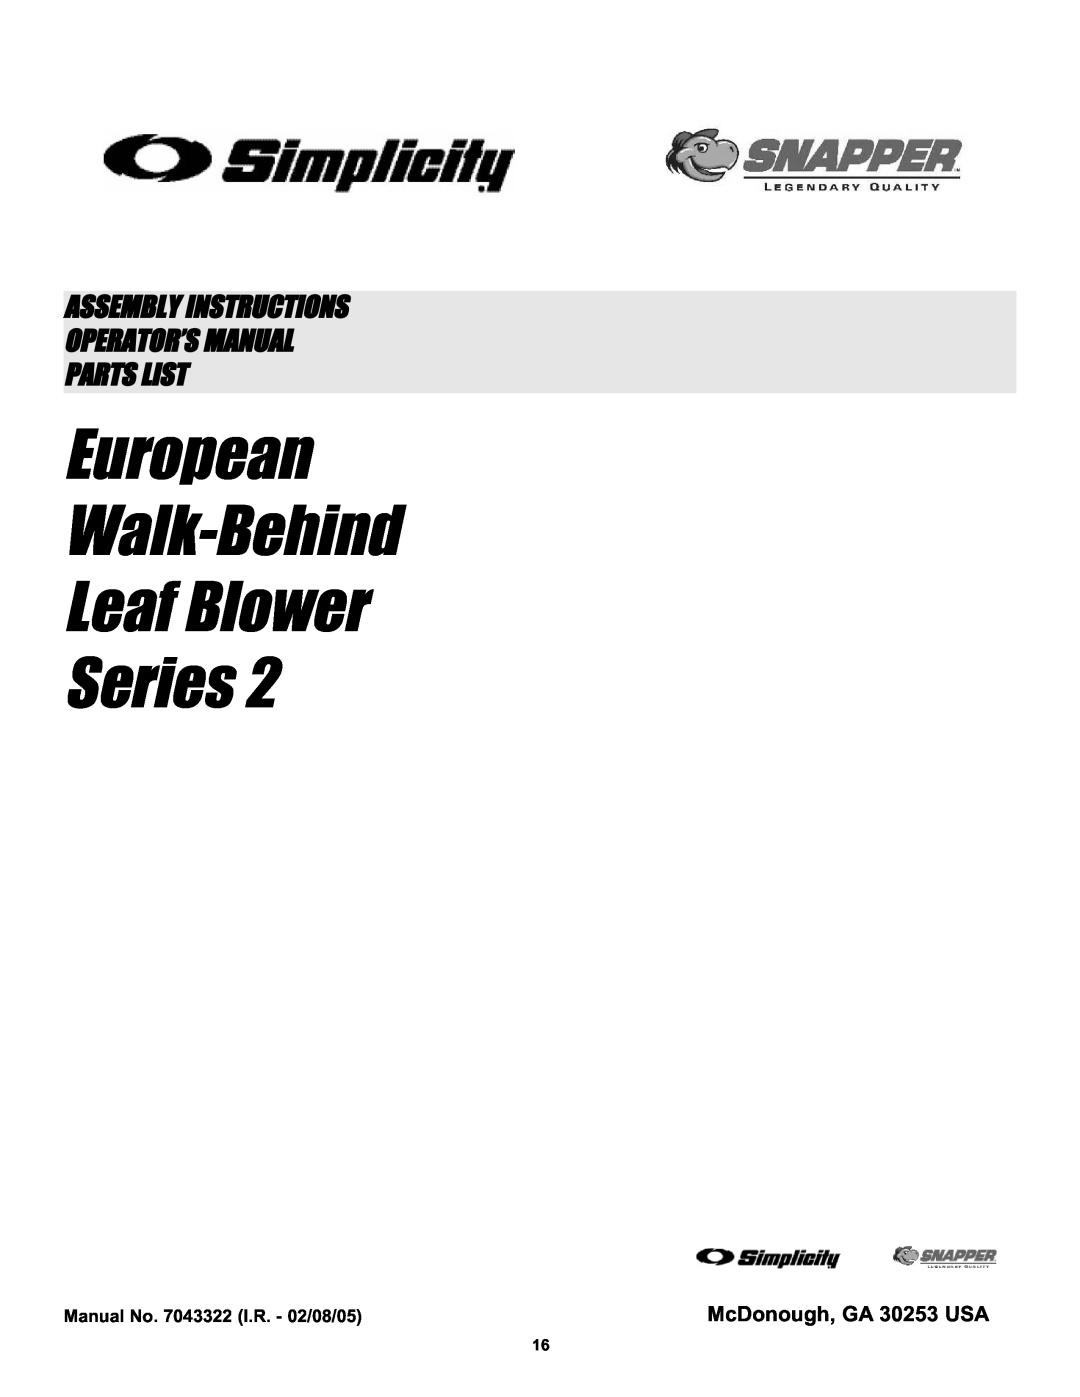 Snapper ELBC6152BV manual McDonough, GA 30253 USA, European Walk-Behind Leaf Blower Series, Parts List 